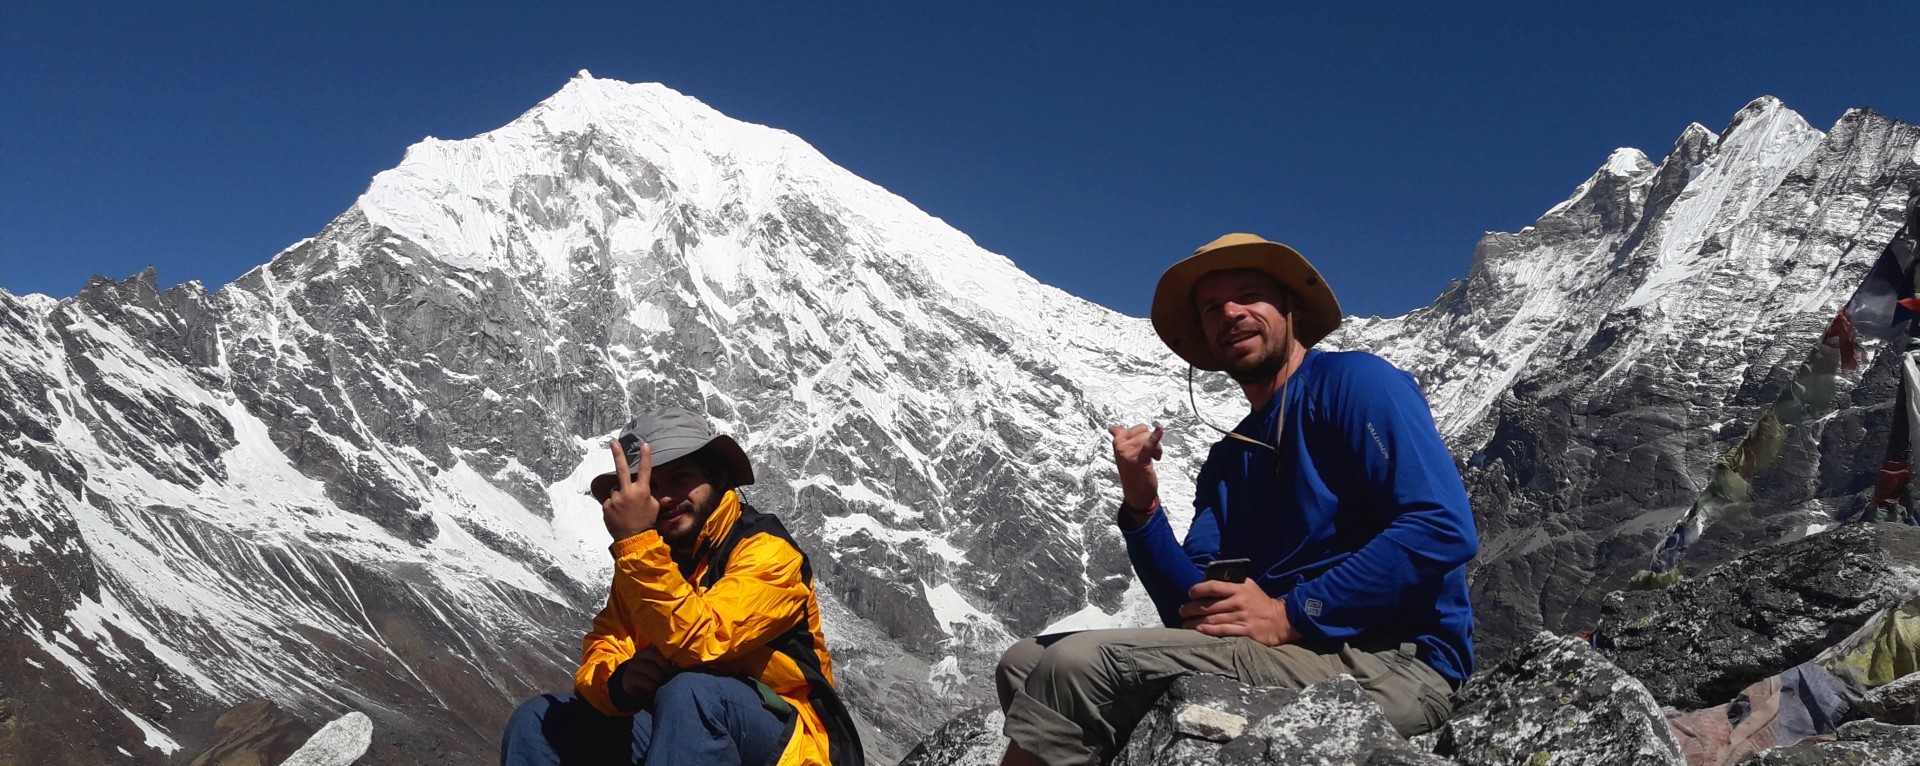 Everest trekking, khumbu trekking, khumbu region 